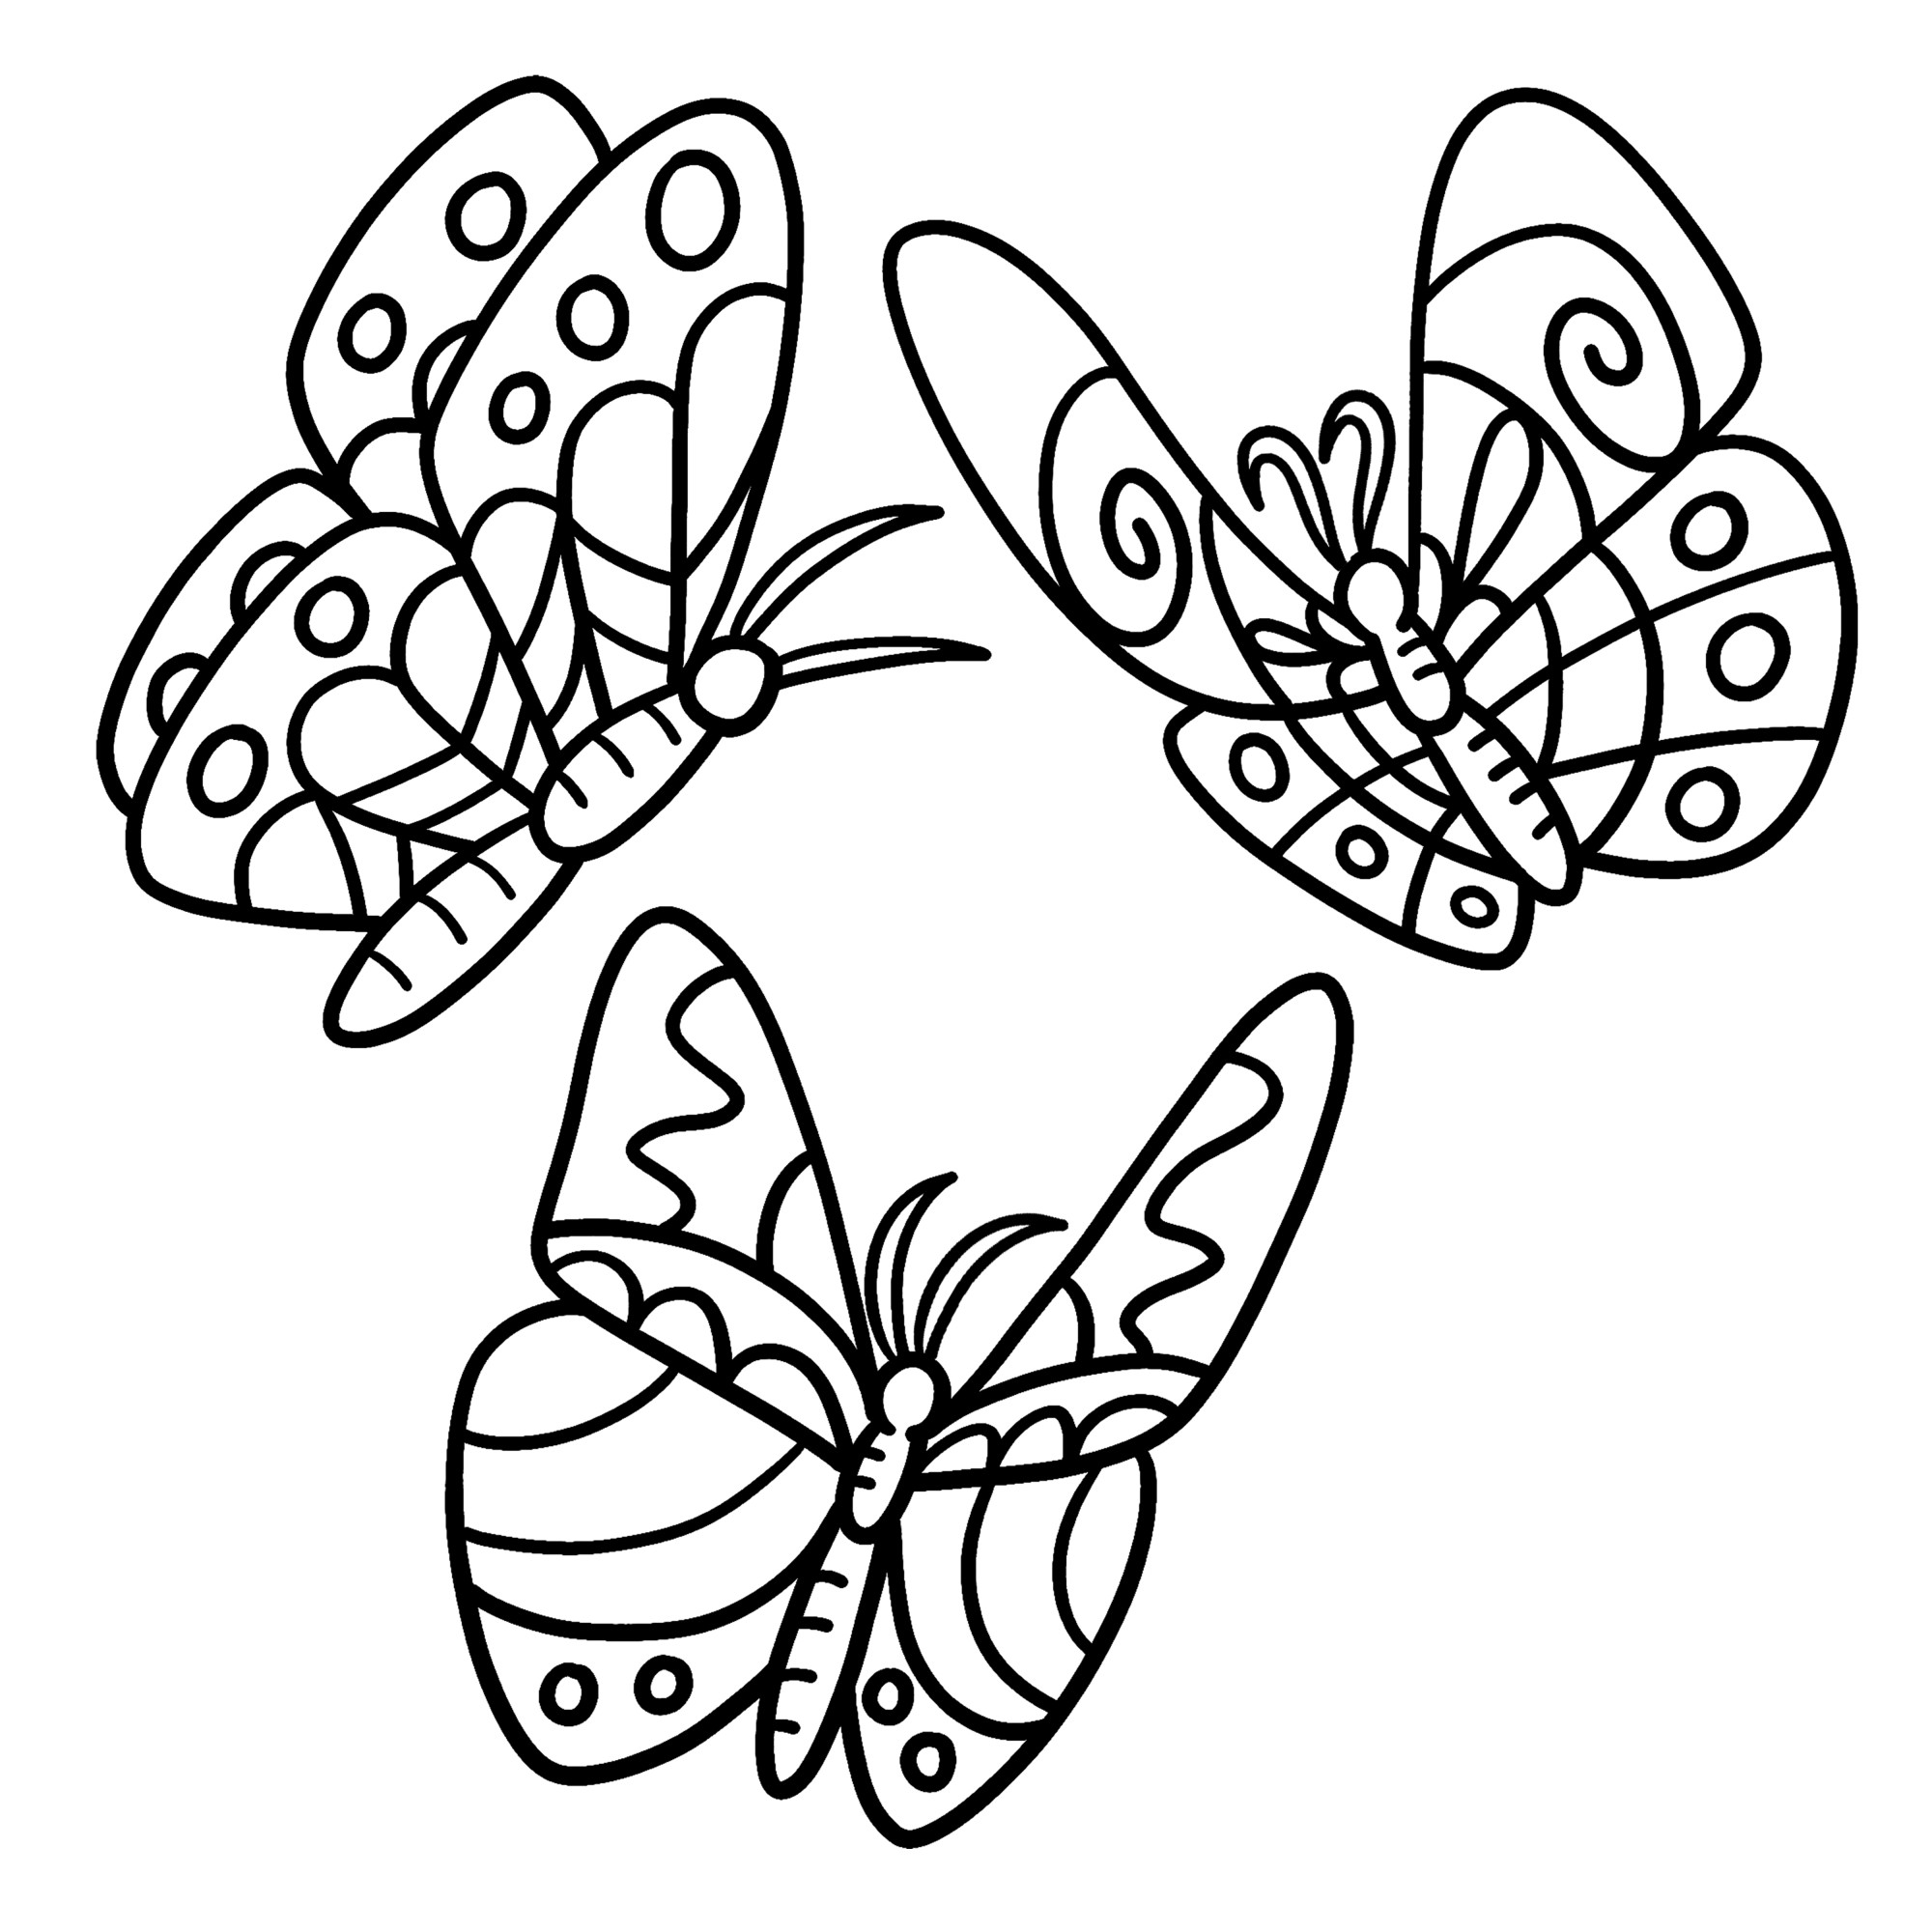 Раскраска для детей: три красивые бабочки